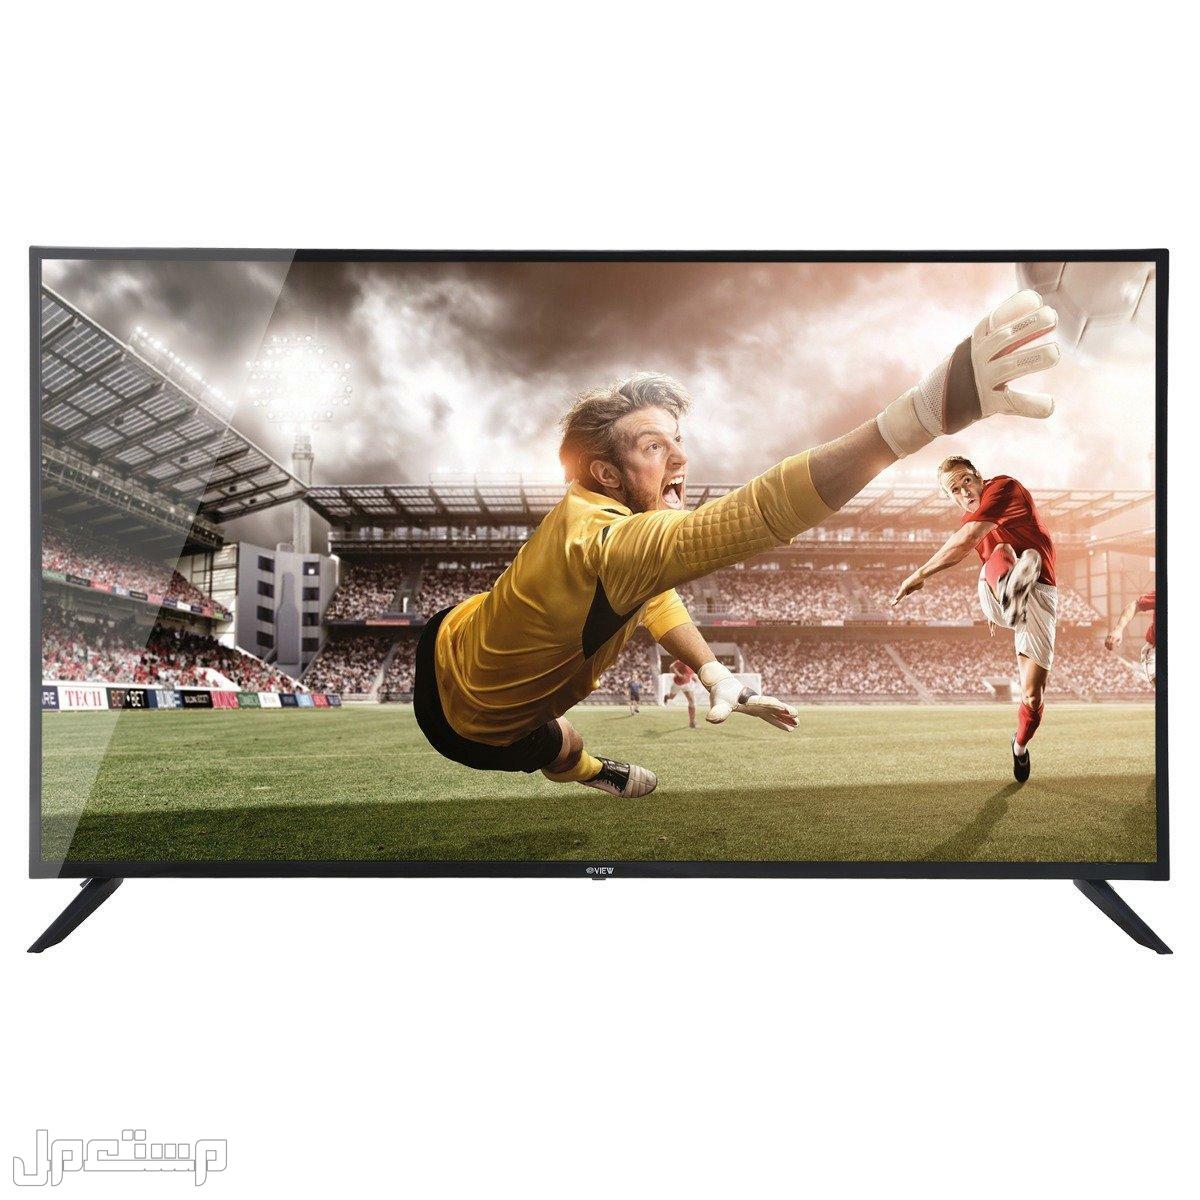 أرخص شاشات تلفزيون يمكنك شرائها (دليلك الكامل) في تونس ارخص شاشات تلفزيون